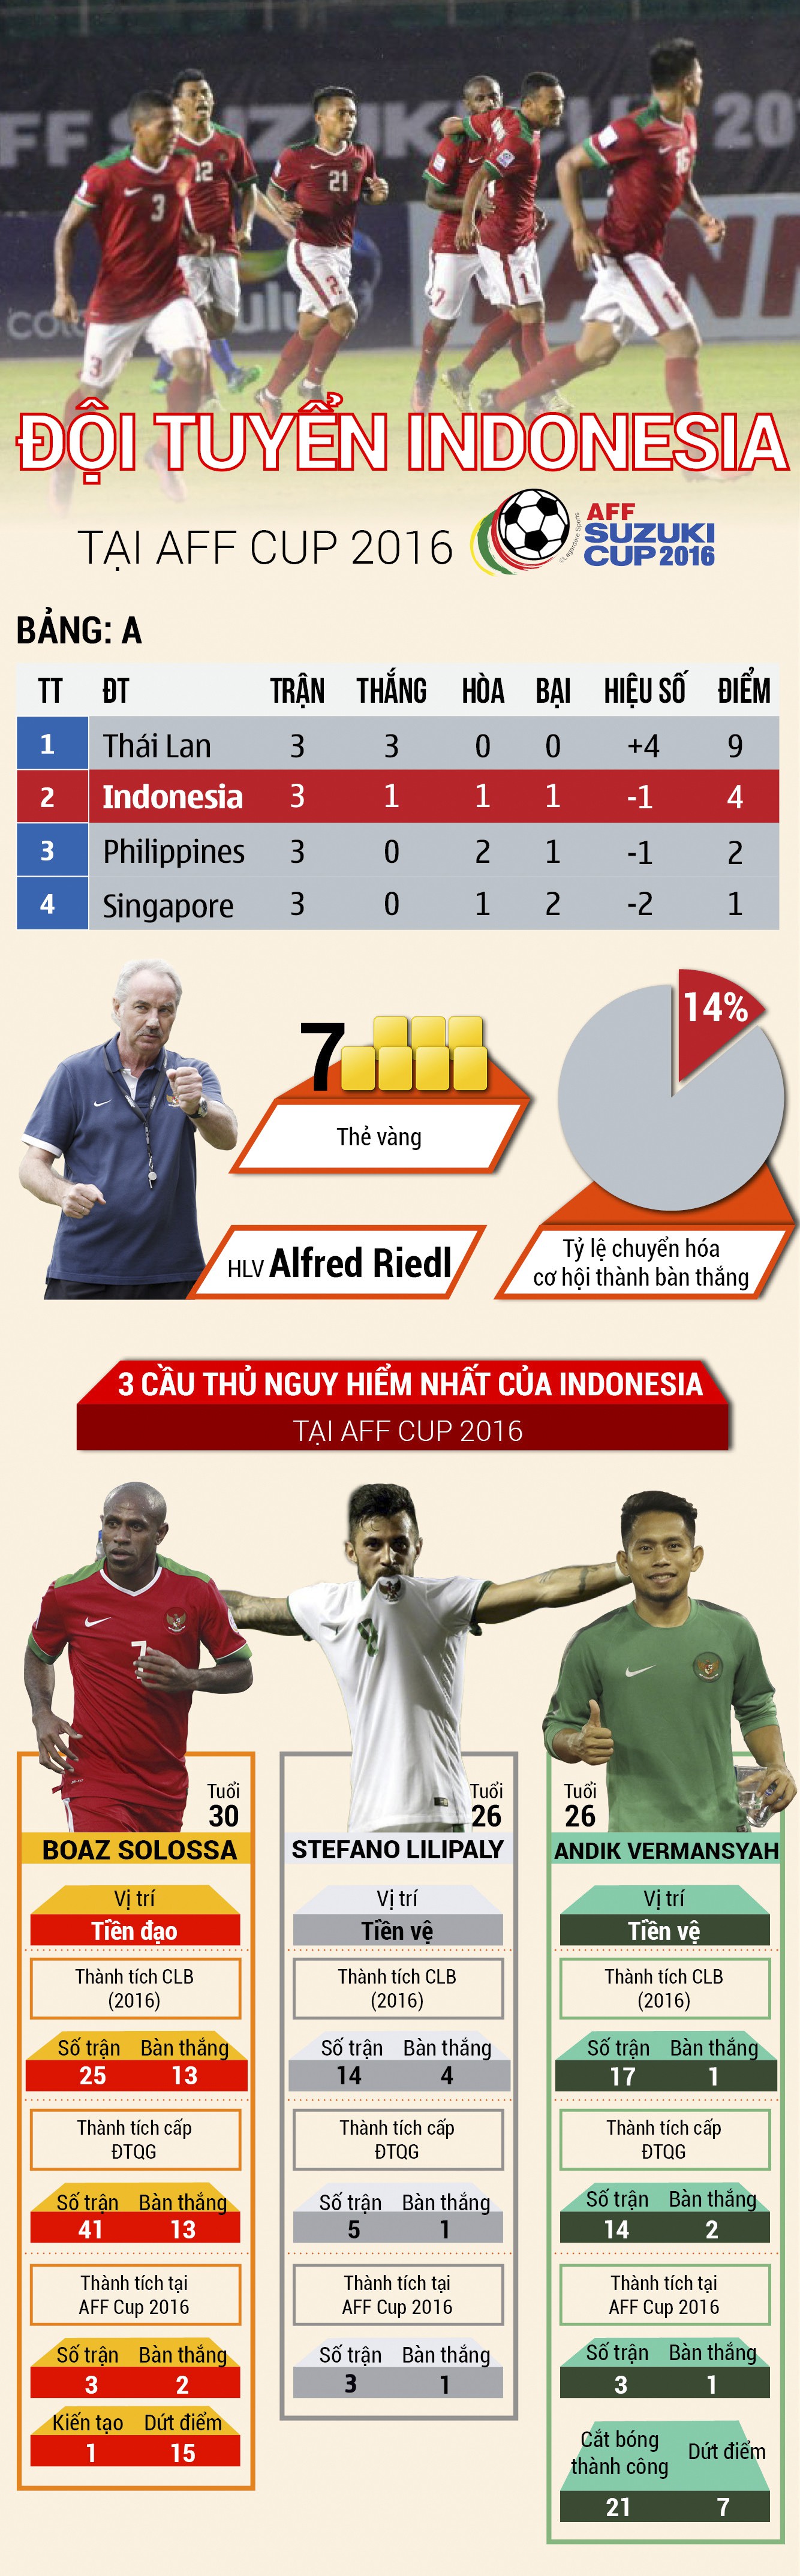 [Infographic] Con số chuyên môn của Indonesia tại vòng bảng AFF Cup 2016